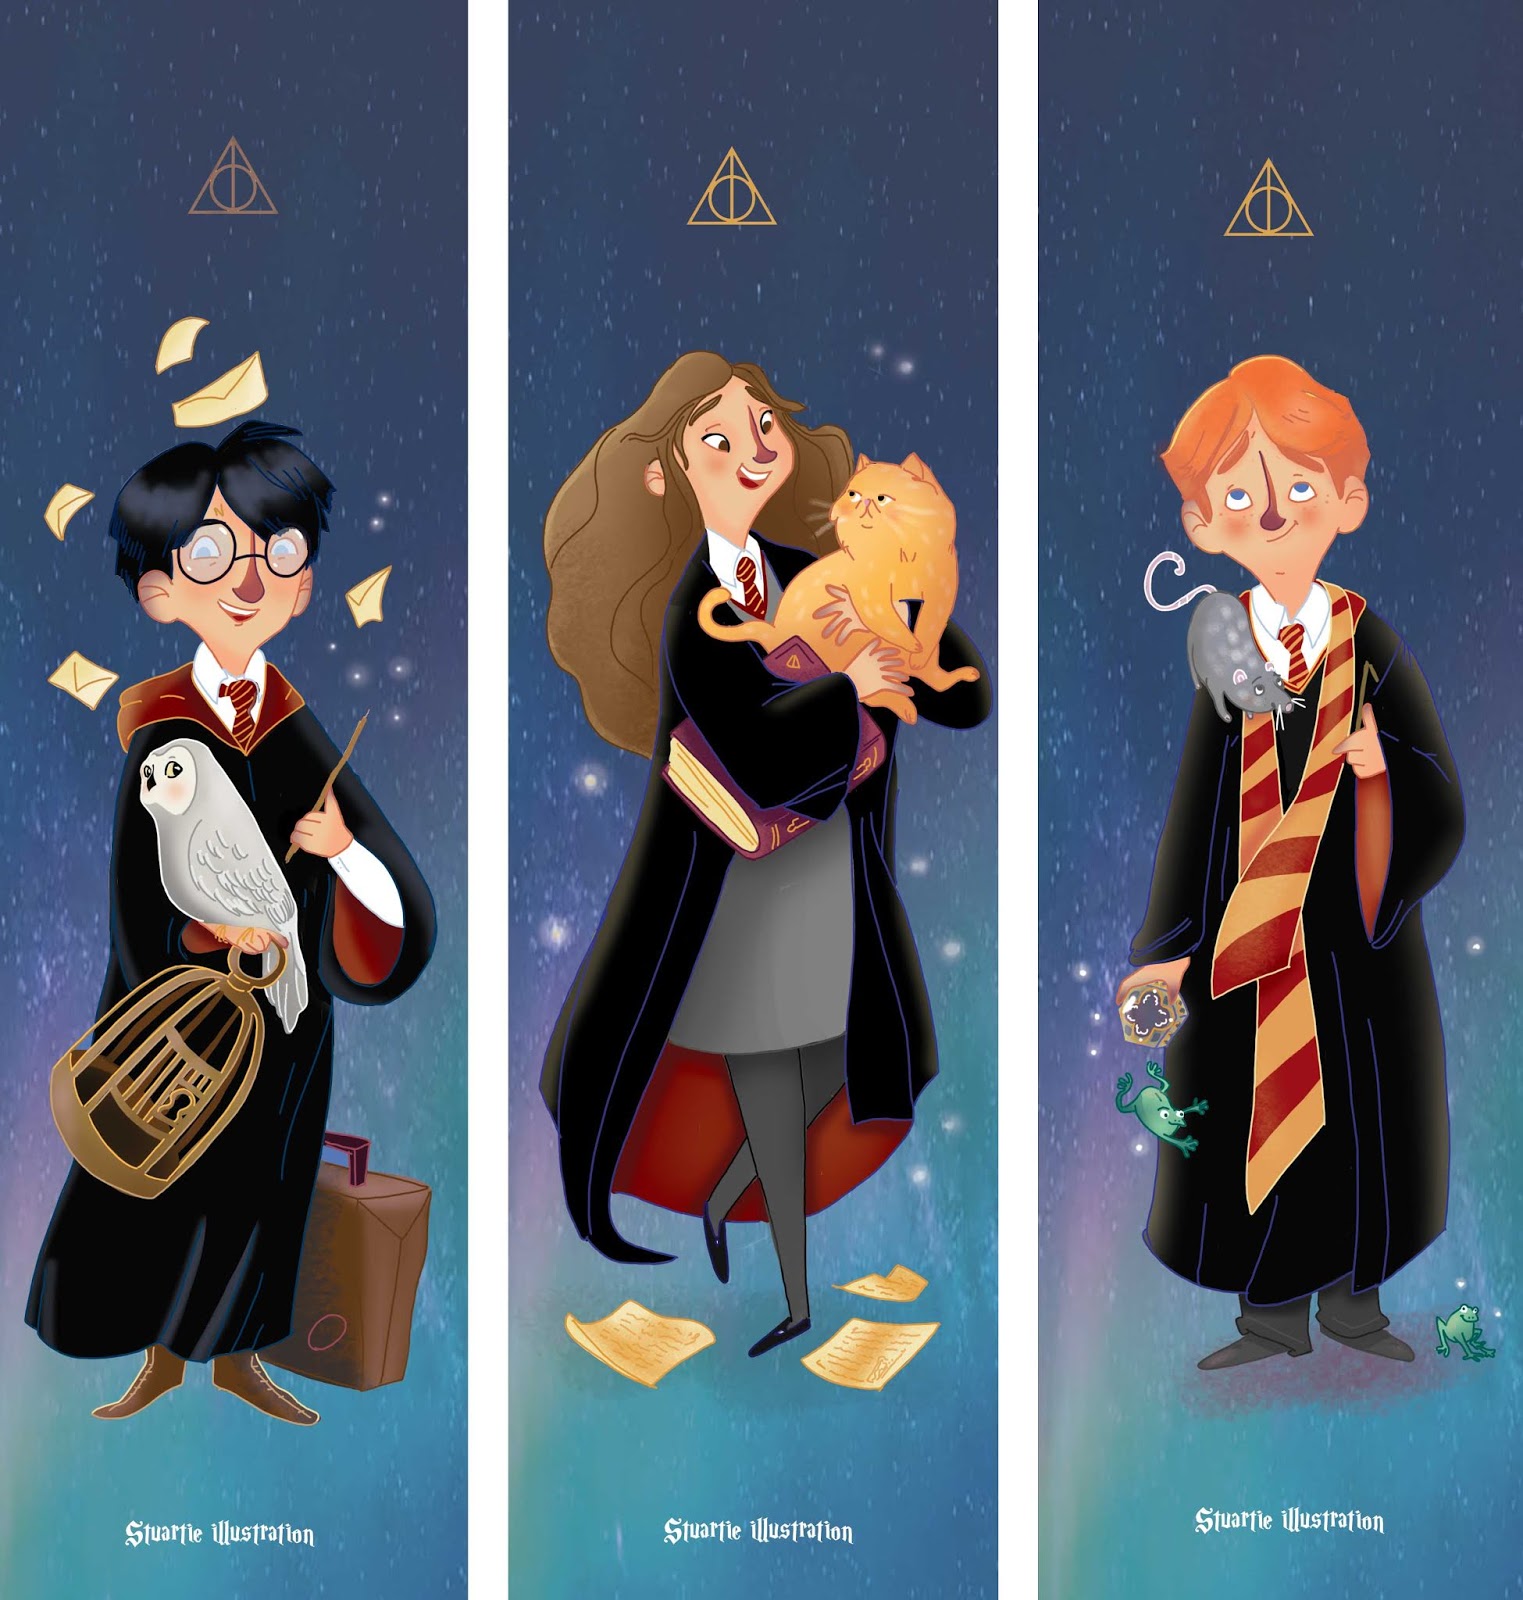 Marque-page Harry Potter, à imprimer